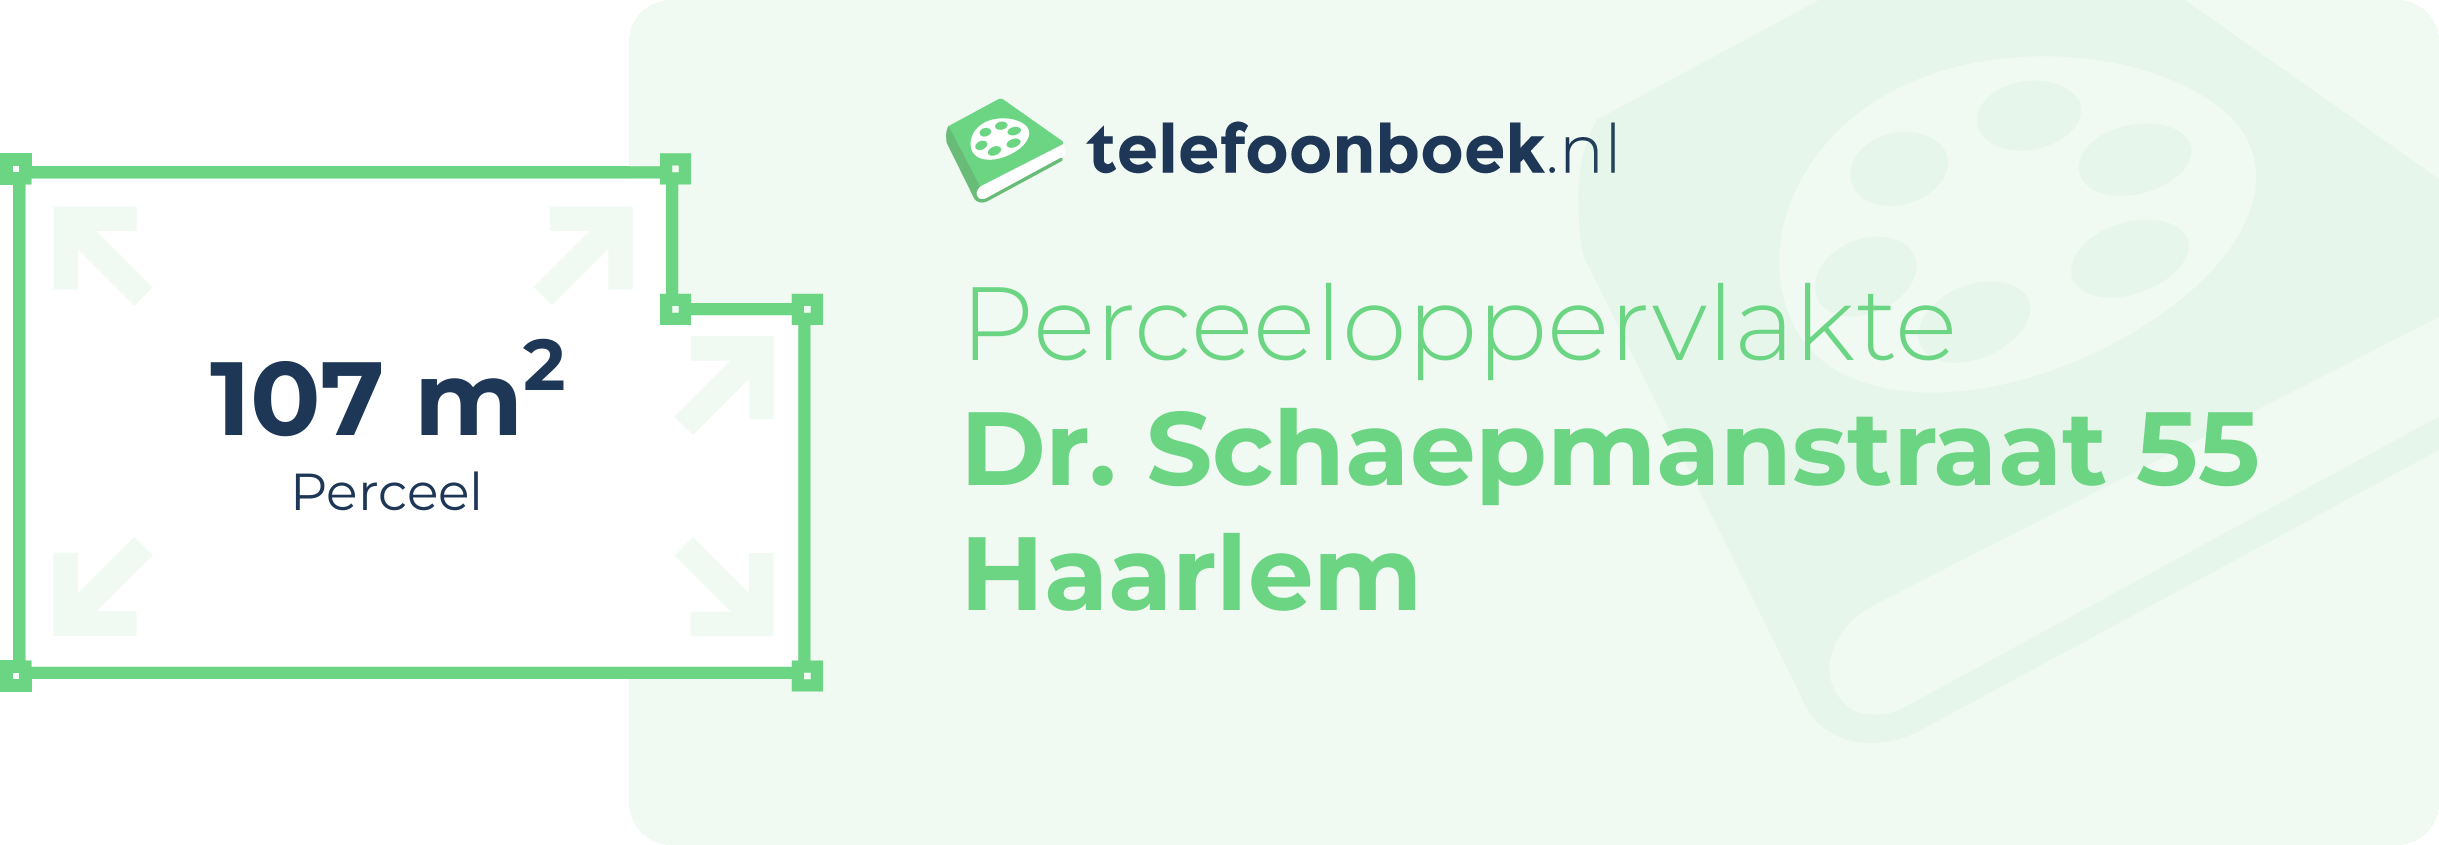 Perceeloppervlakte Dr. Schaepmanstraat 55 Haarlem